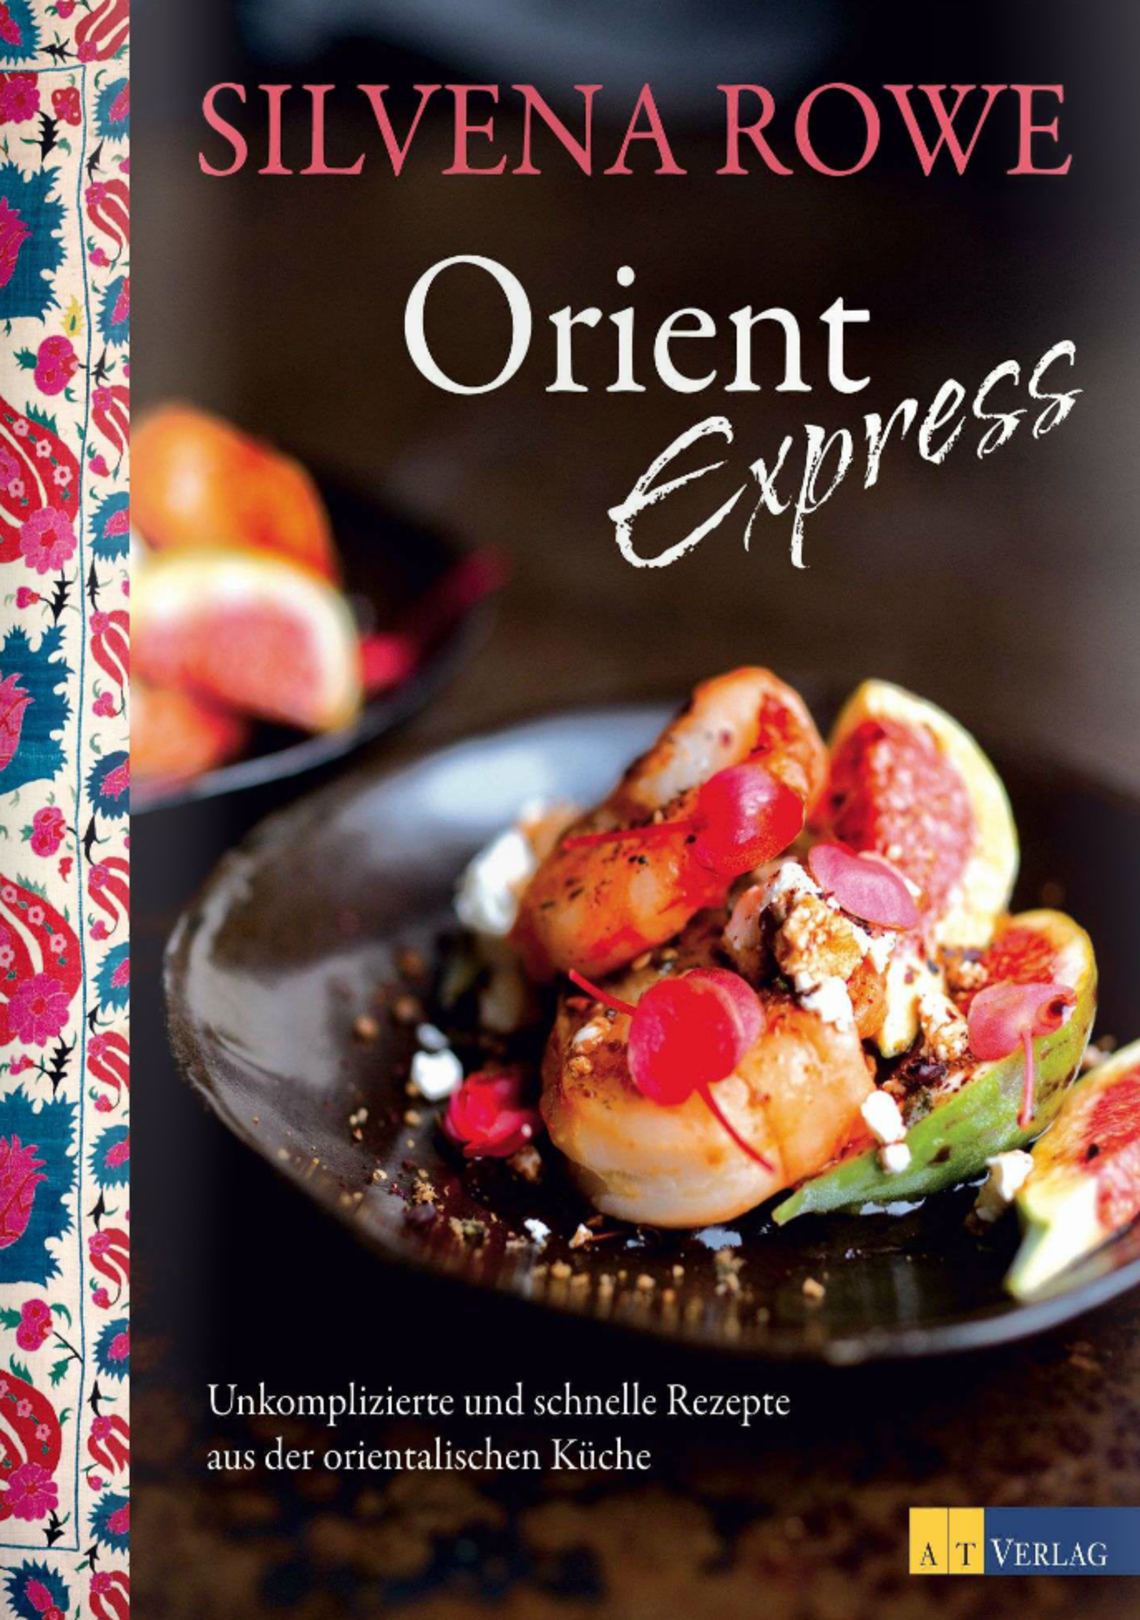 Orient Express von Silvena Rowe